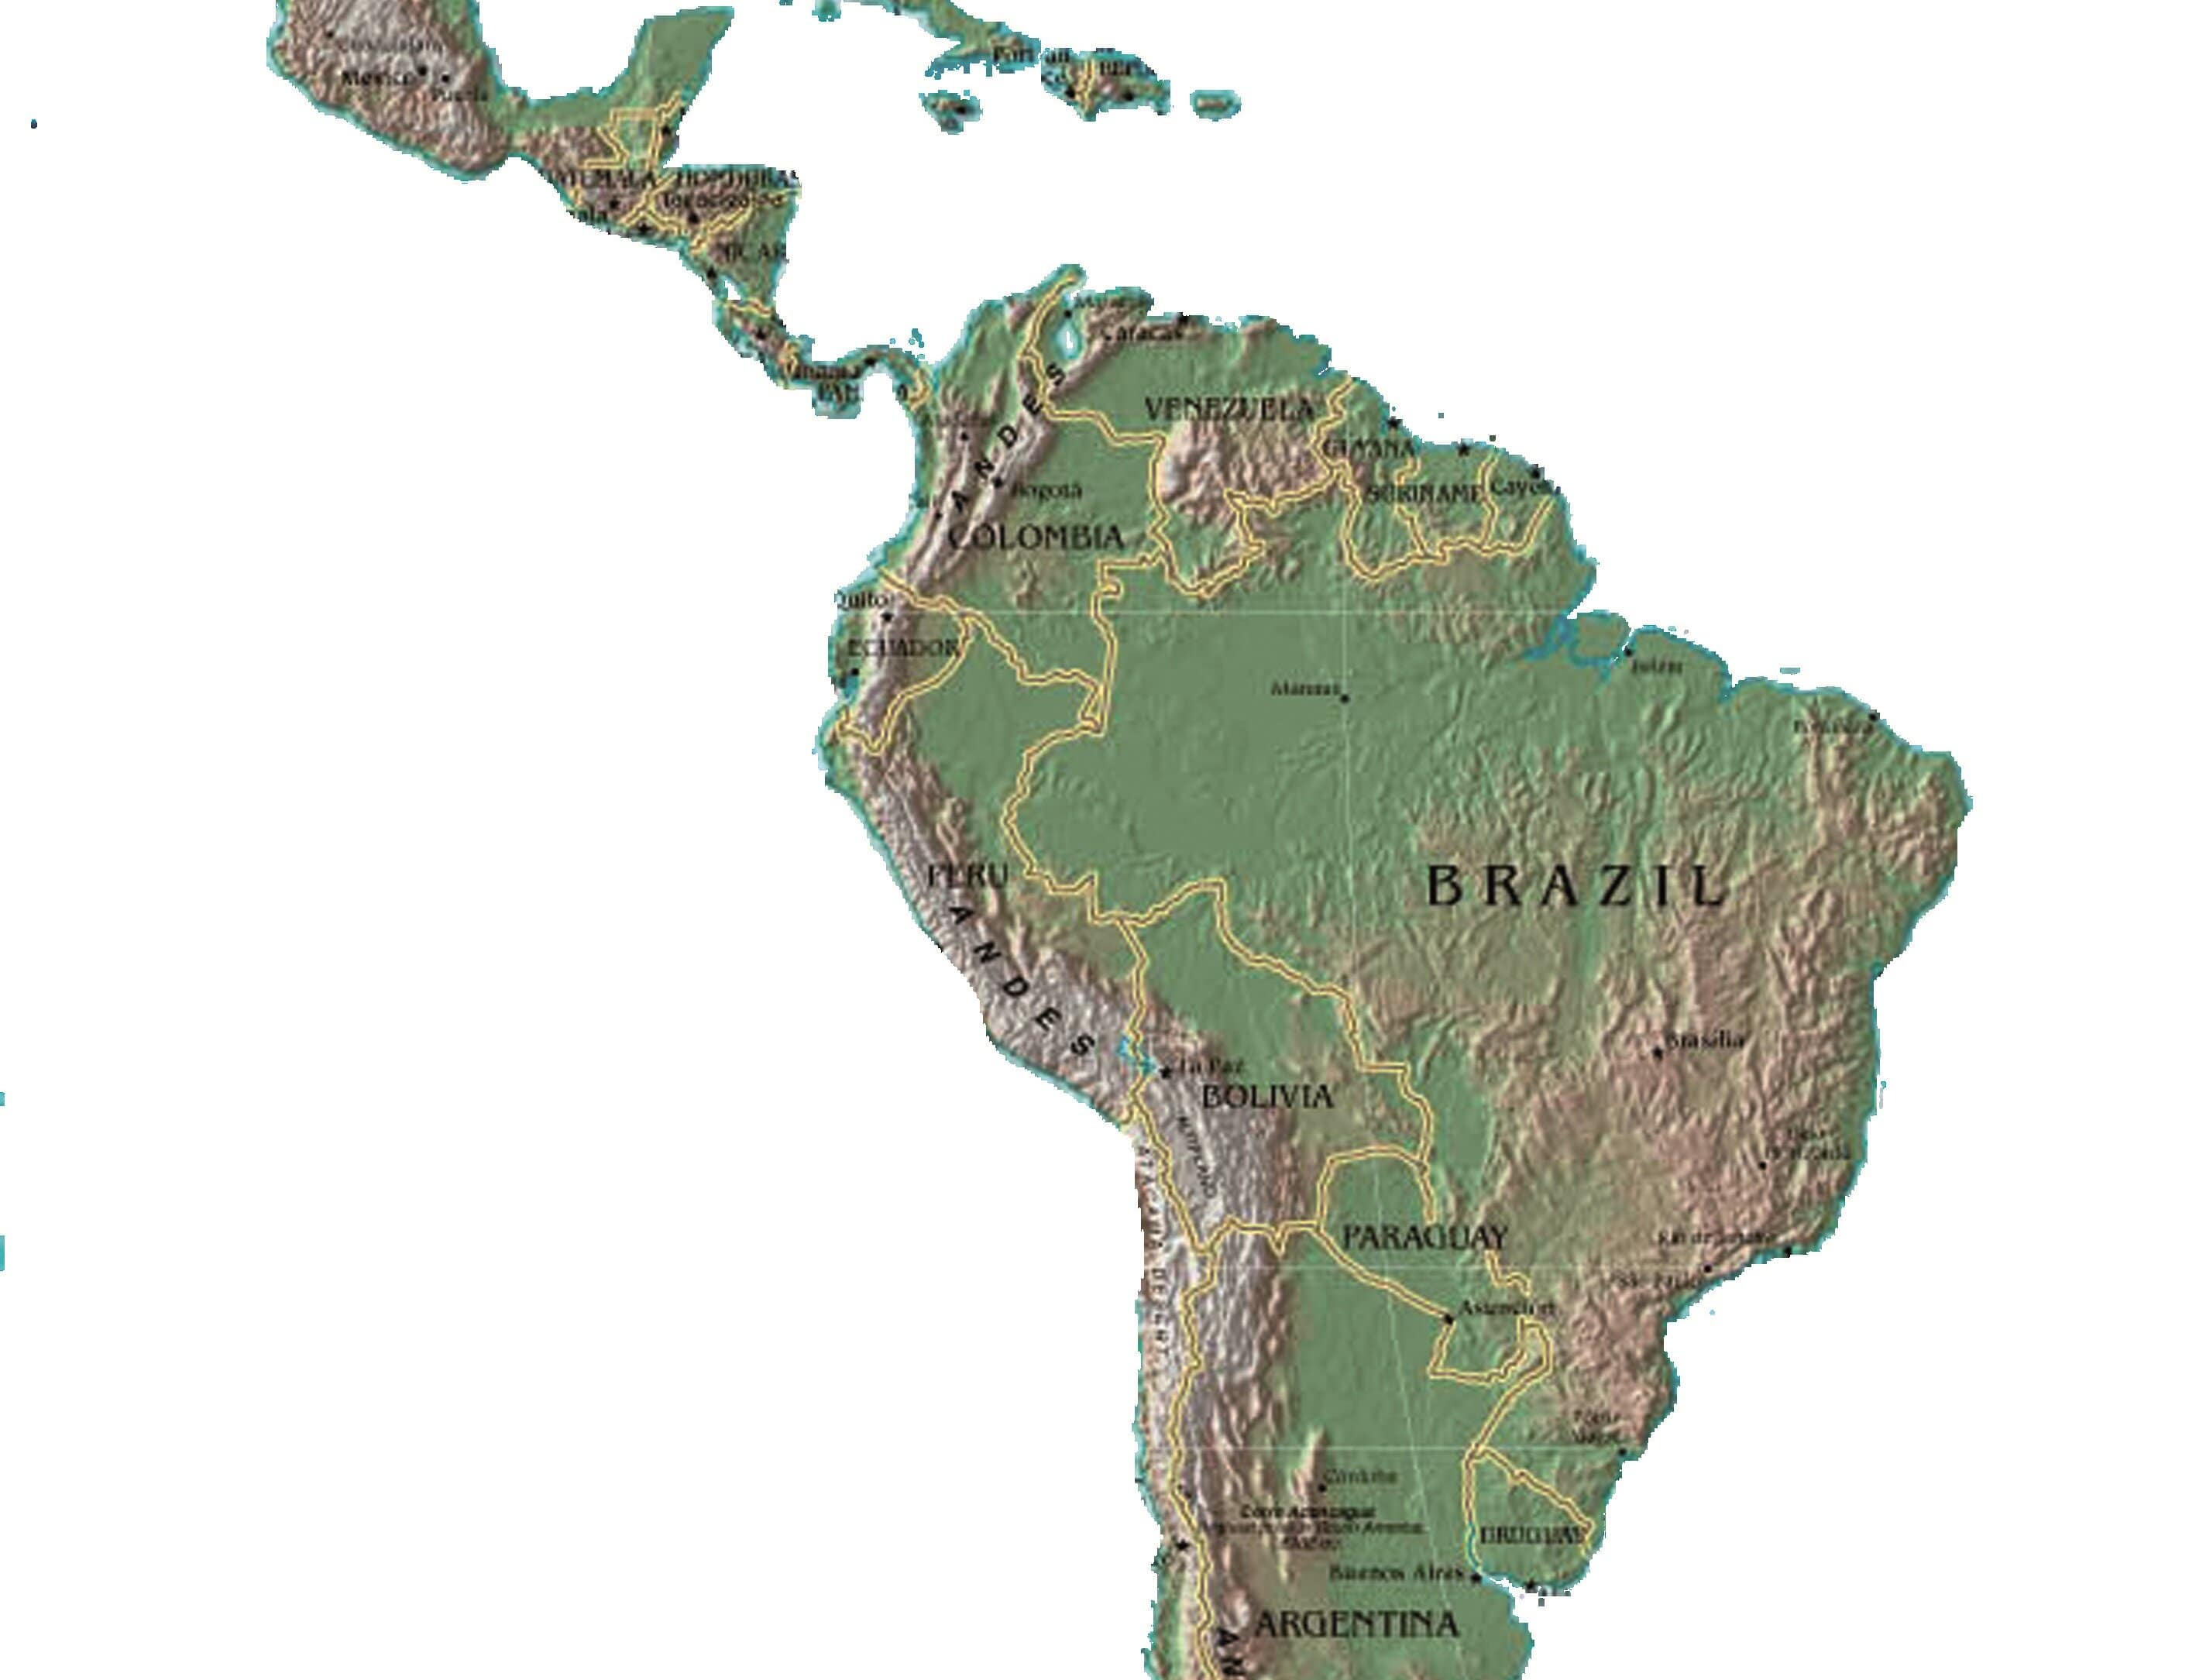 Studiengangsbild, zeigt den Umriss, Landkarte von Südamerika